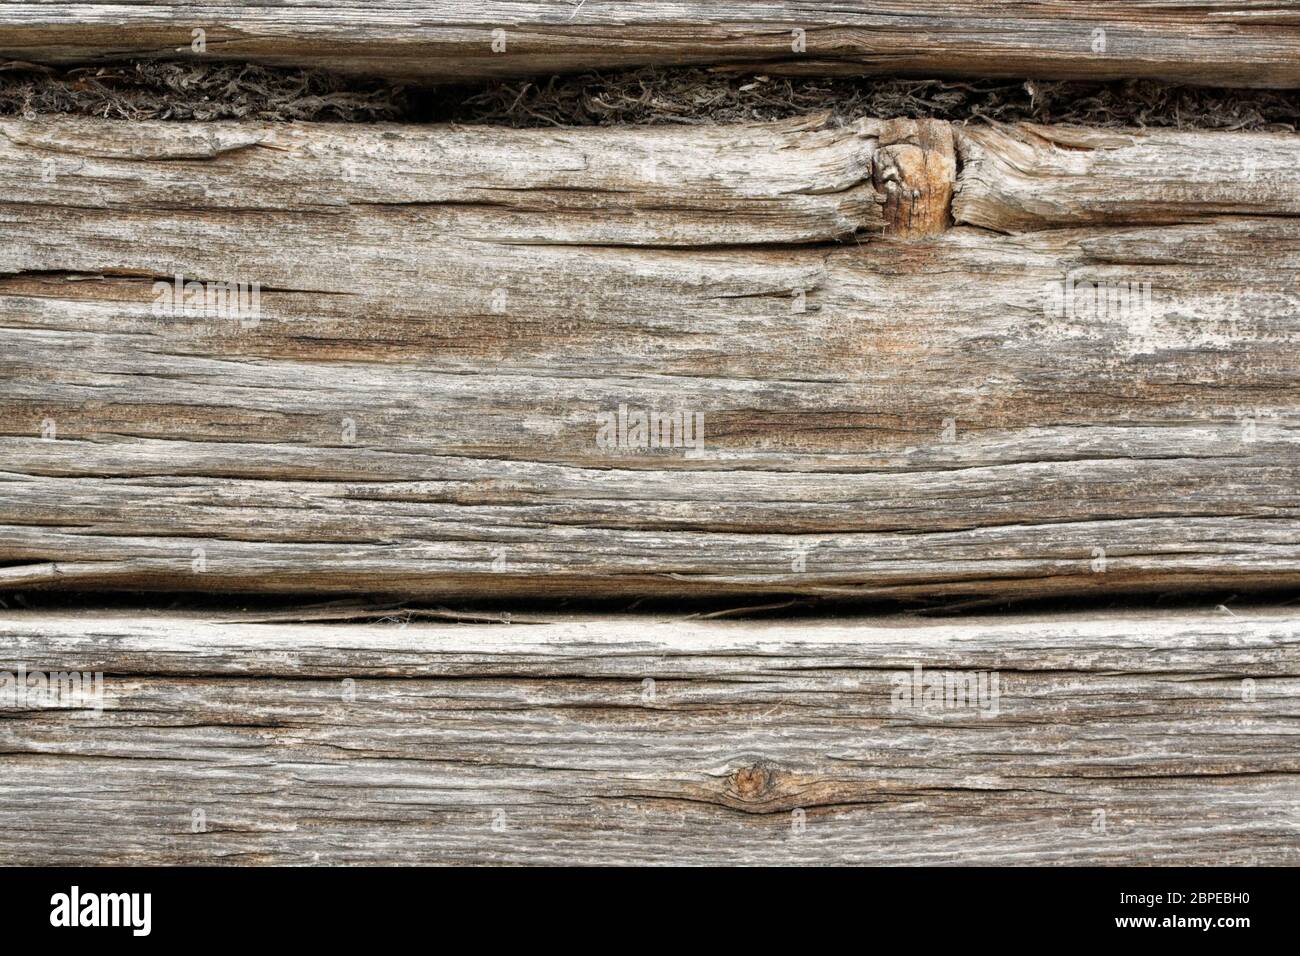 Alter Holzbalken der Verwittert und ausgeblichen ist in der Frontale aufgenommen. Stock Photo